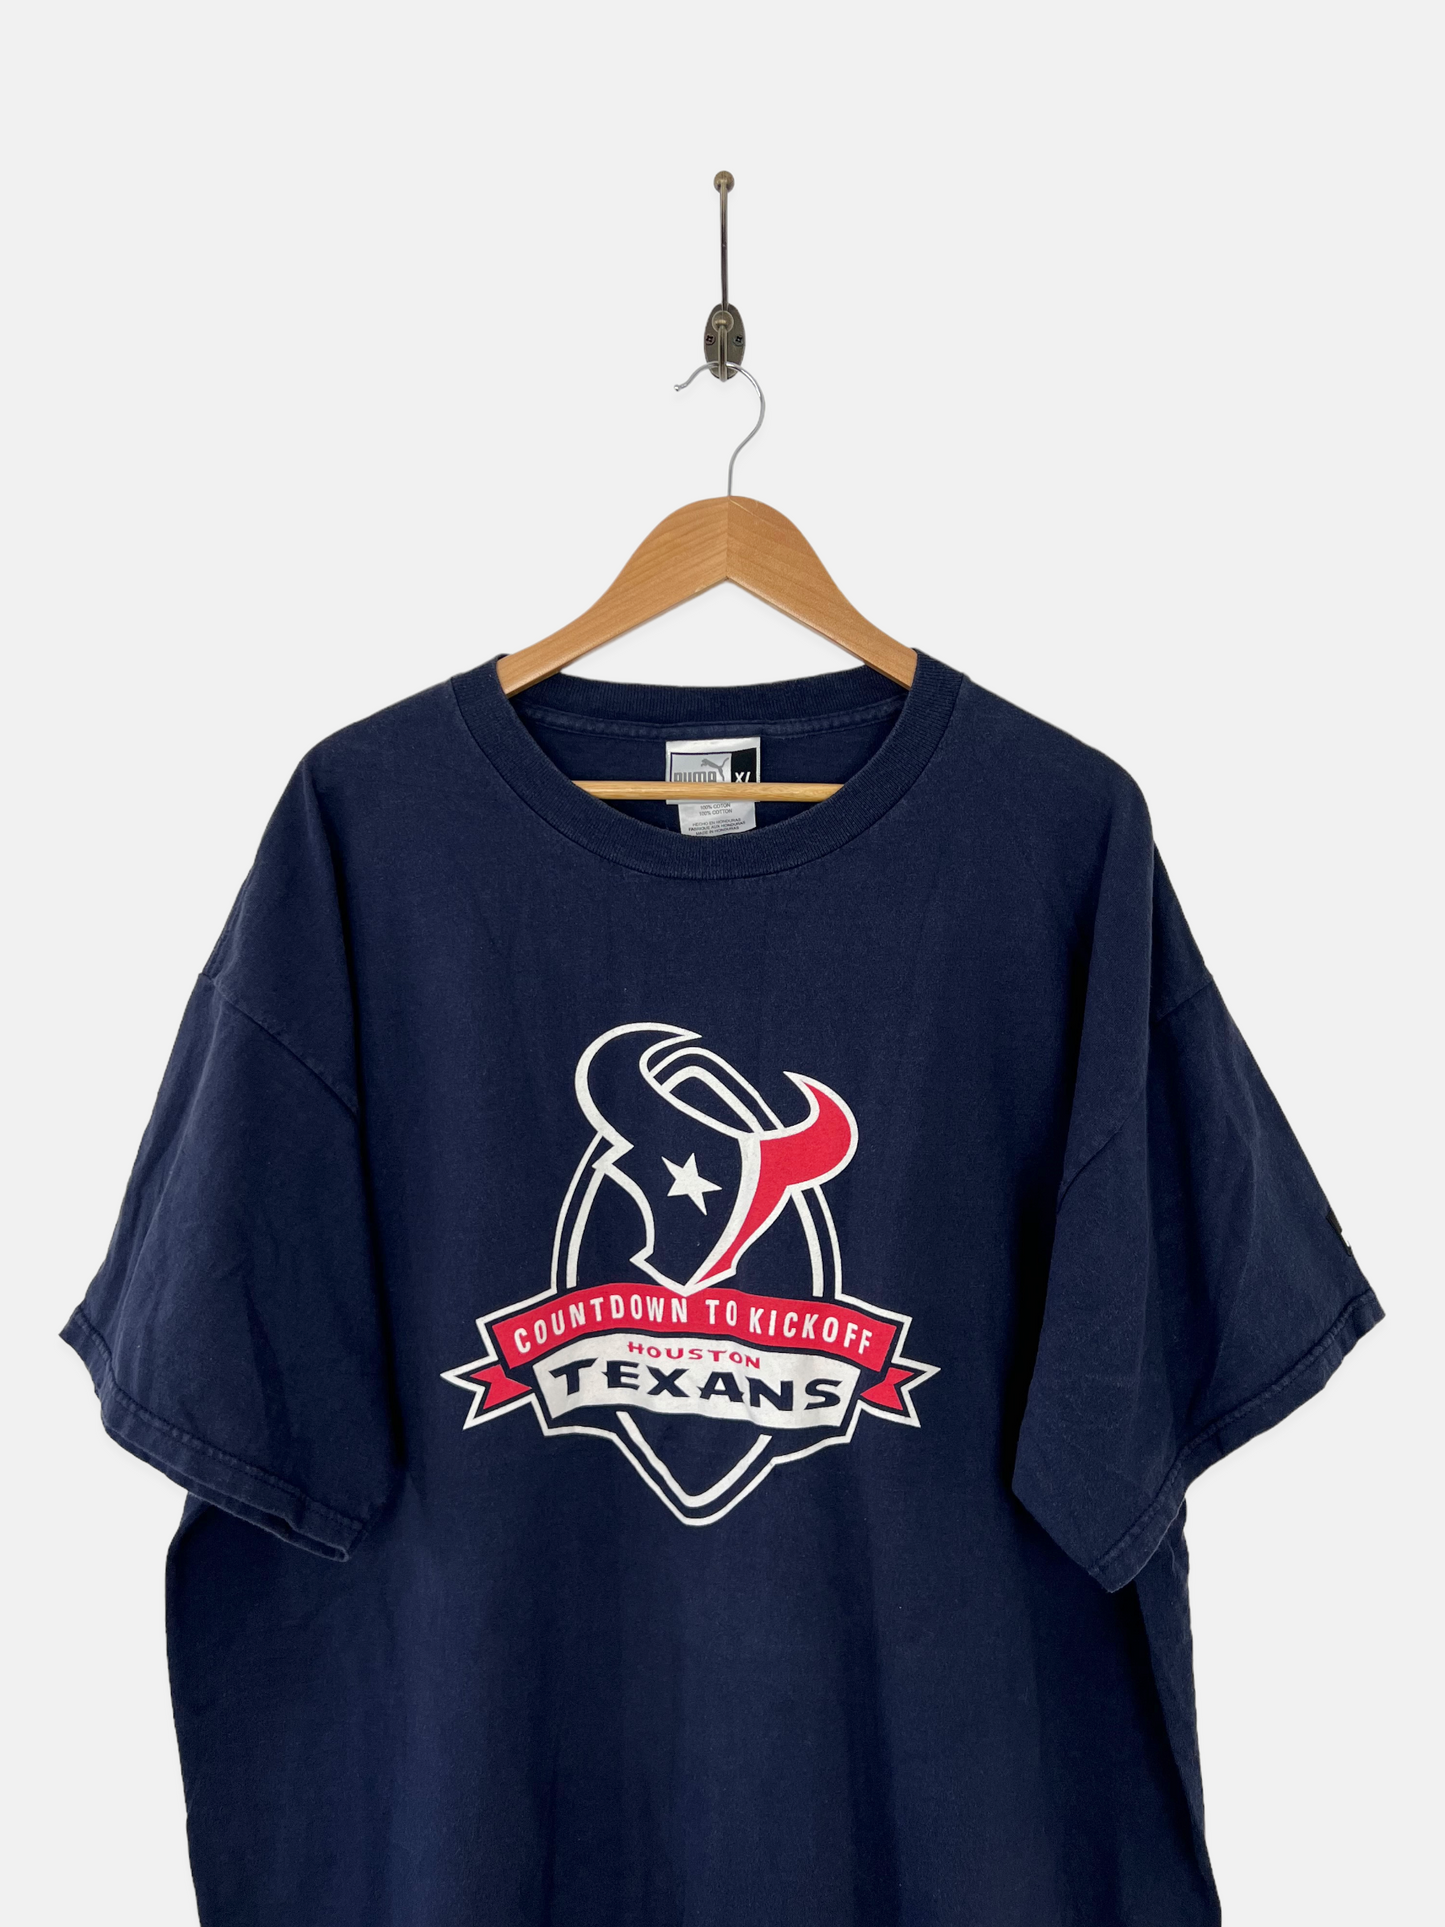 90's Houston Texans Puma NFL Vintage T-Shirt Size 2XL